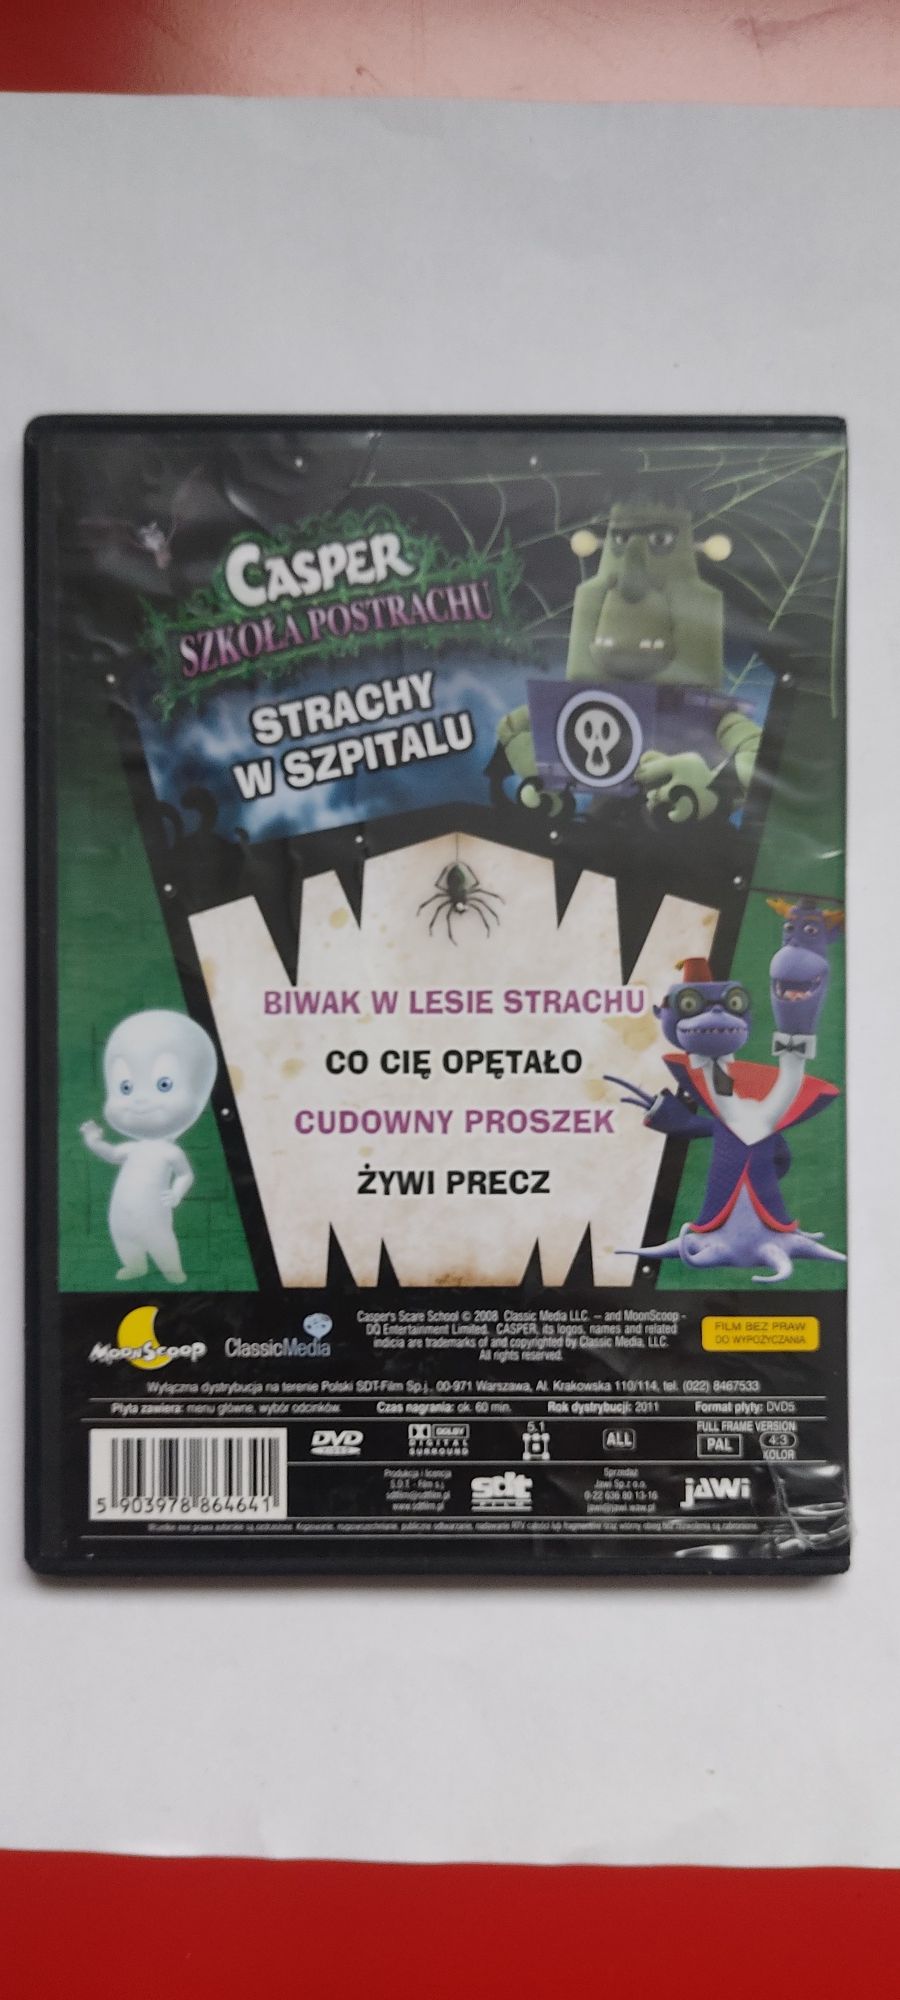 Film rysunkowy DVD dla dzieci Casper strachy w szpitalu